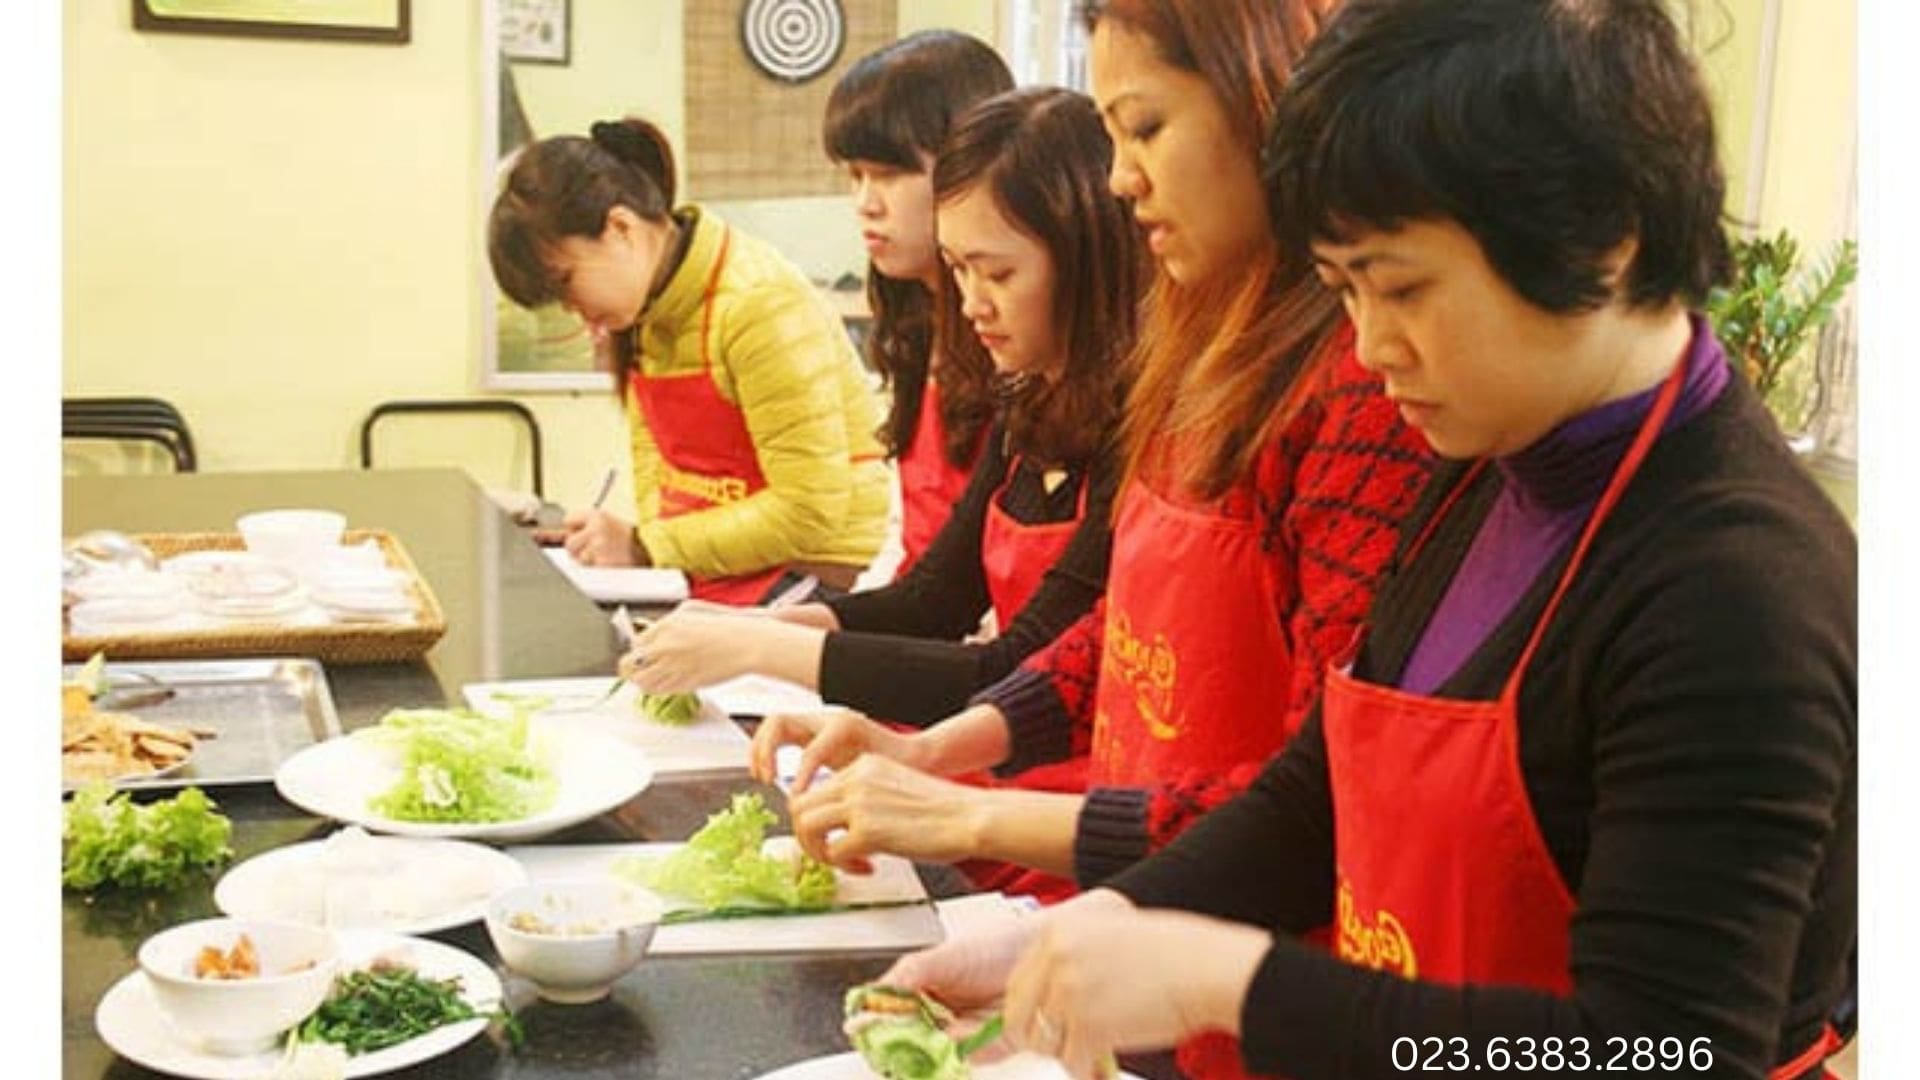 Trung tâm việc làm Phụ nữ Đà Nẵng - Học bếp chuyên nghiệp tại Đà Nẵng